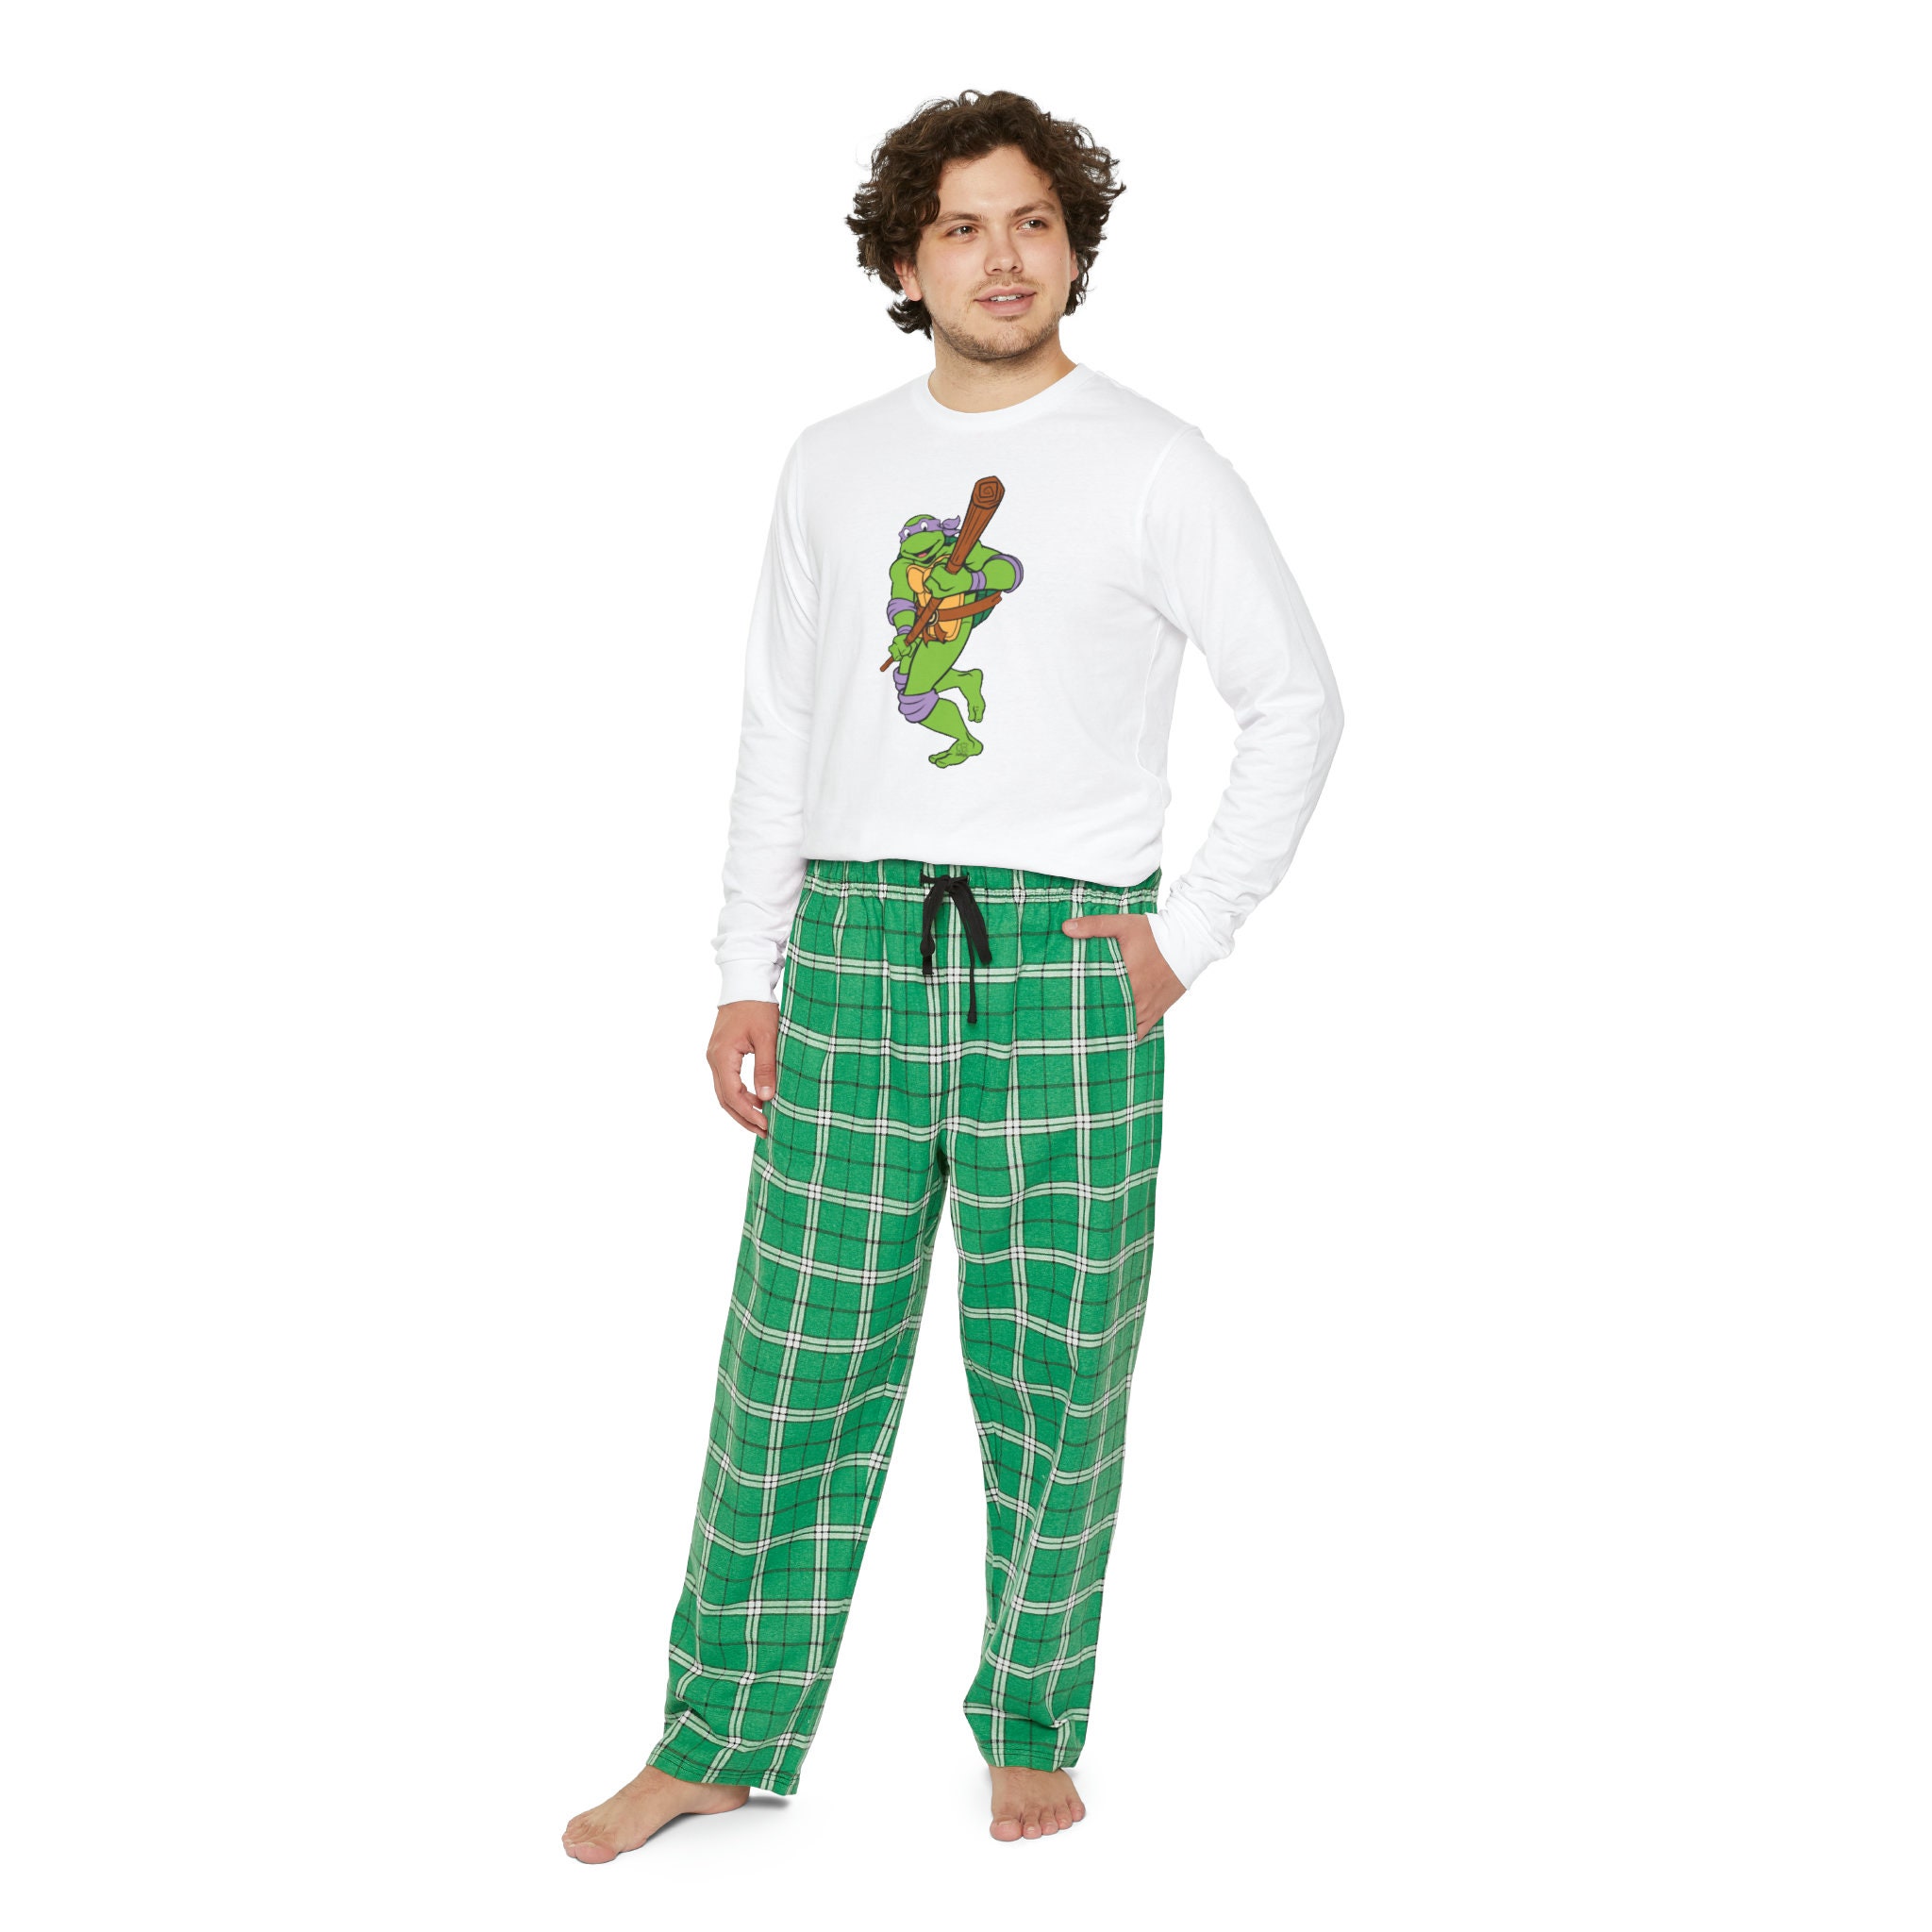 Teenage Mutant Ninja Turtles FACES Pajamas size 4T New Zip-Up Footed Pjs  #Nickelodeon #FootedPajamas #TeenageMutantNinjaTu…